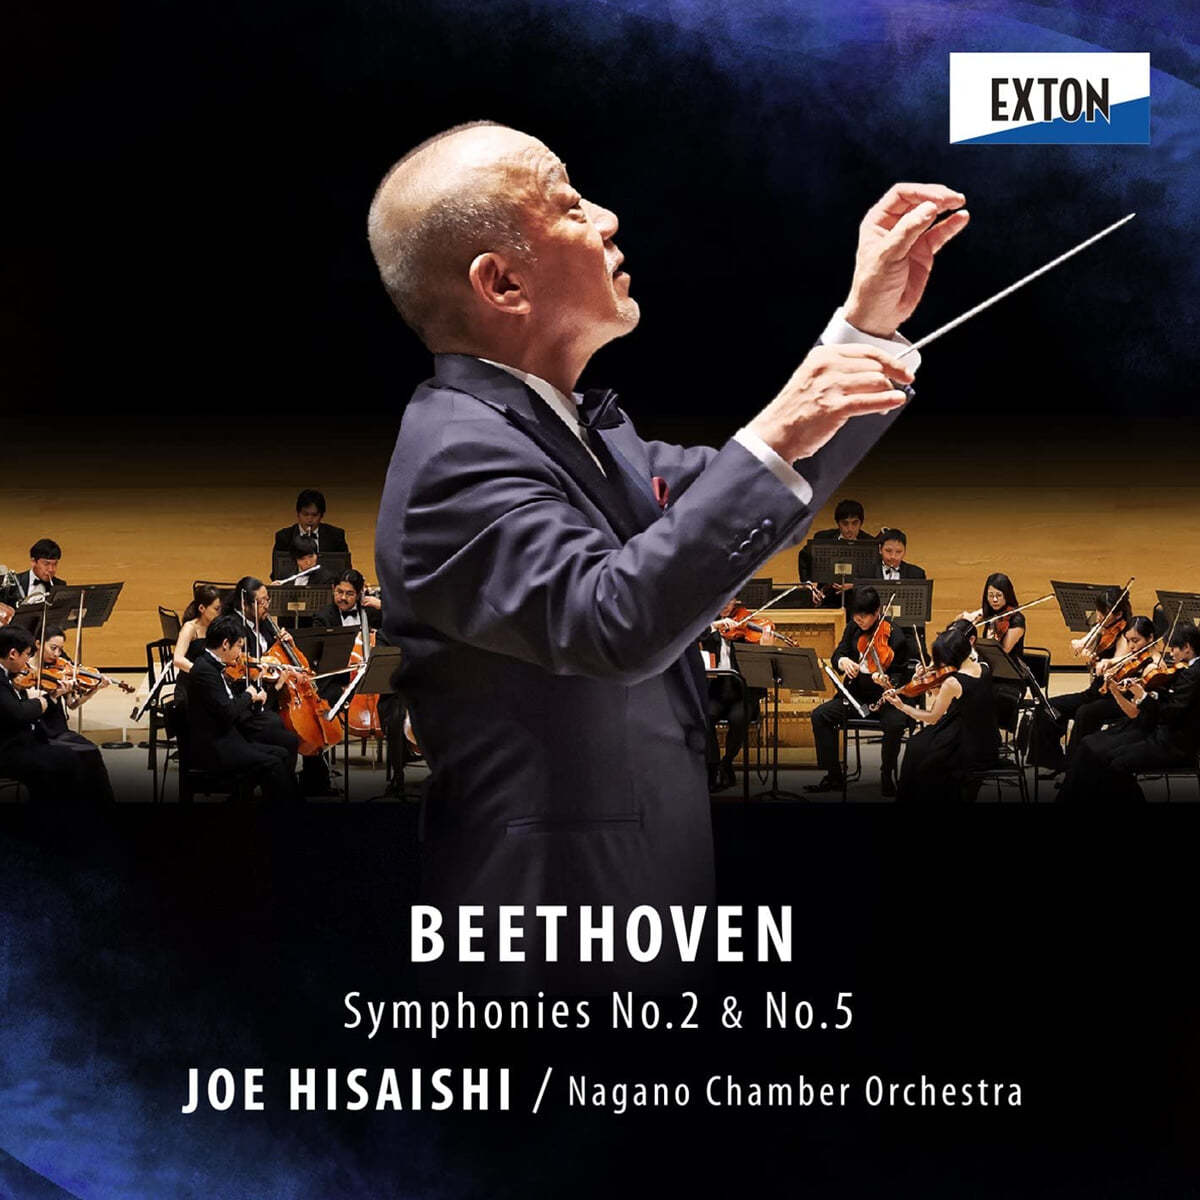 Joe Hisaishi 베토벤: 교향곡 2번, 5번 '운명' (Beethoven: Symphonies Op.36, Op.67) 